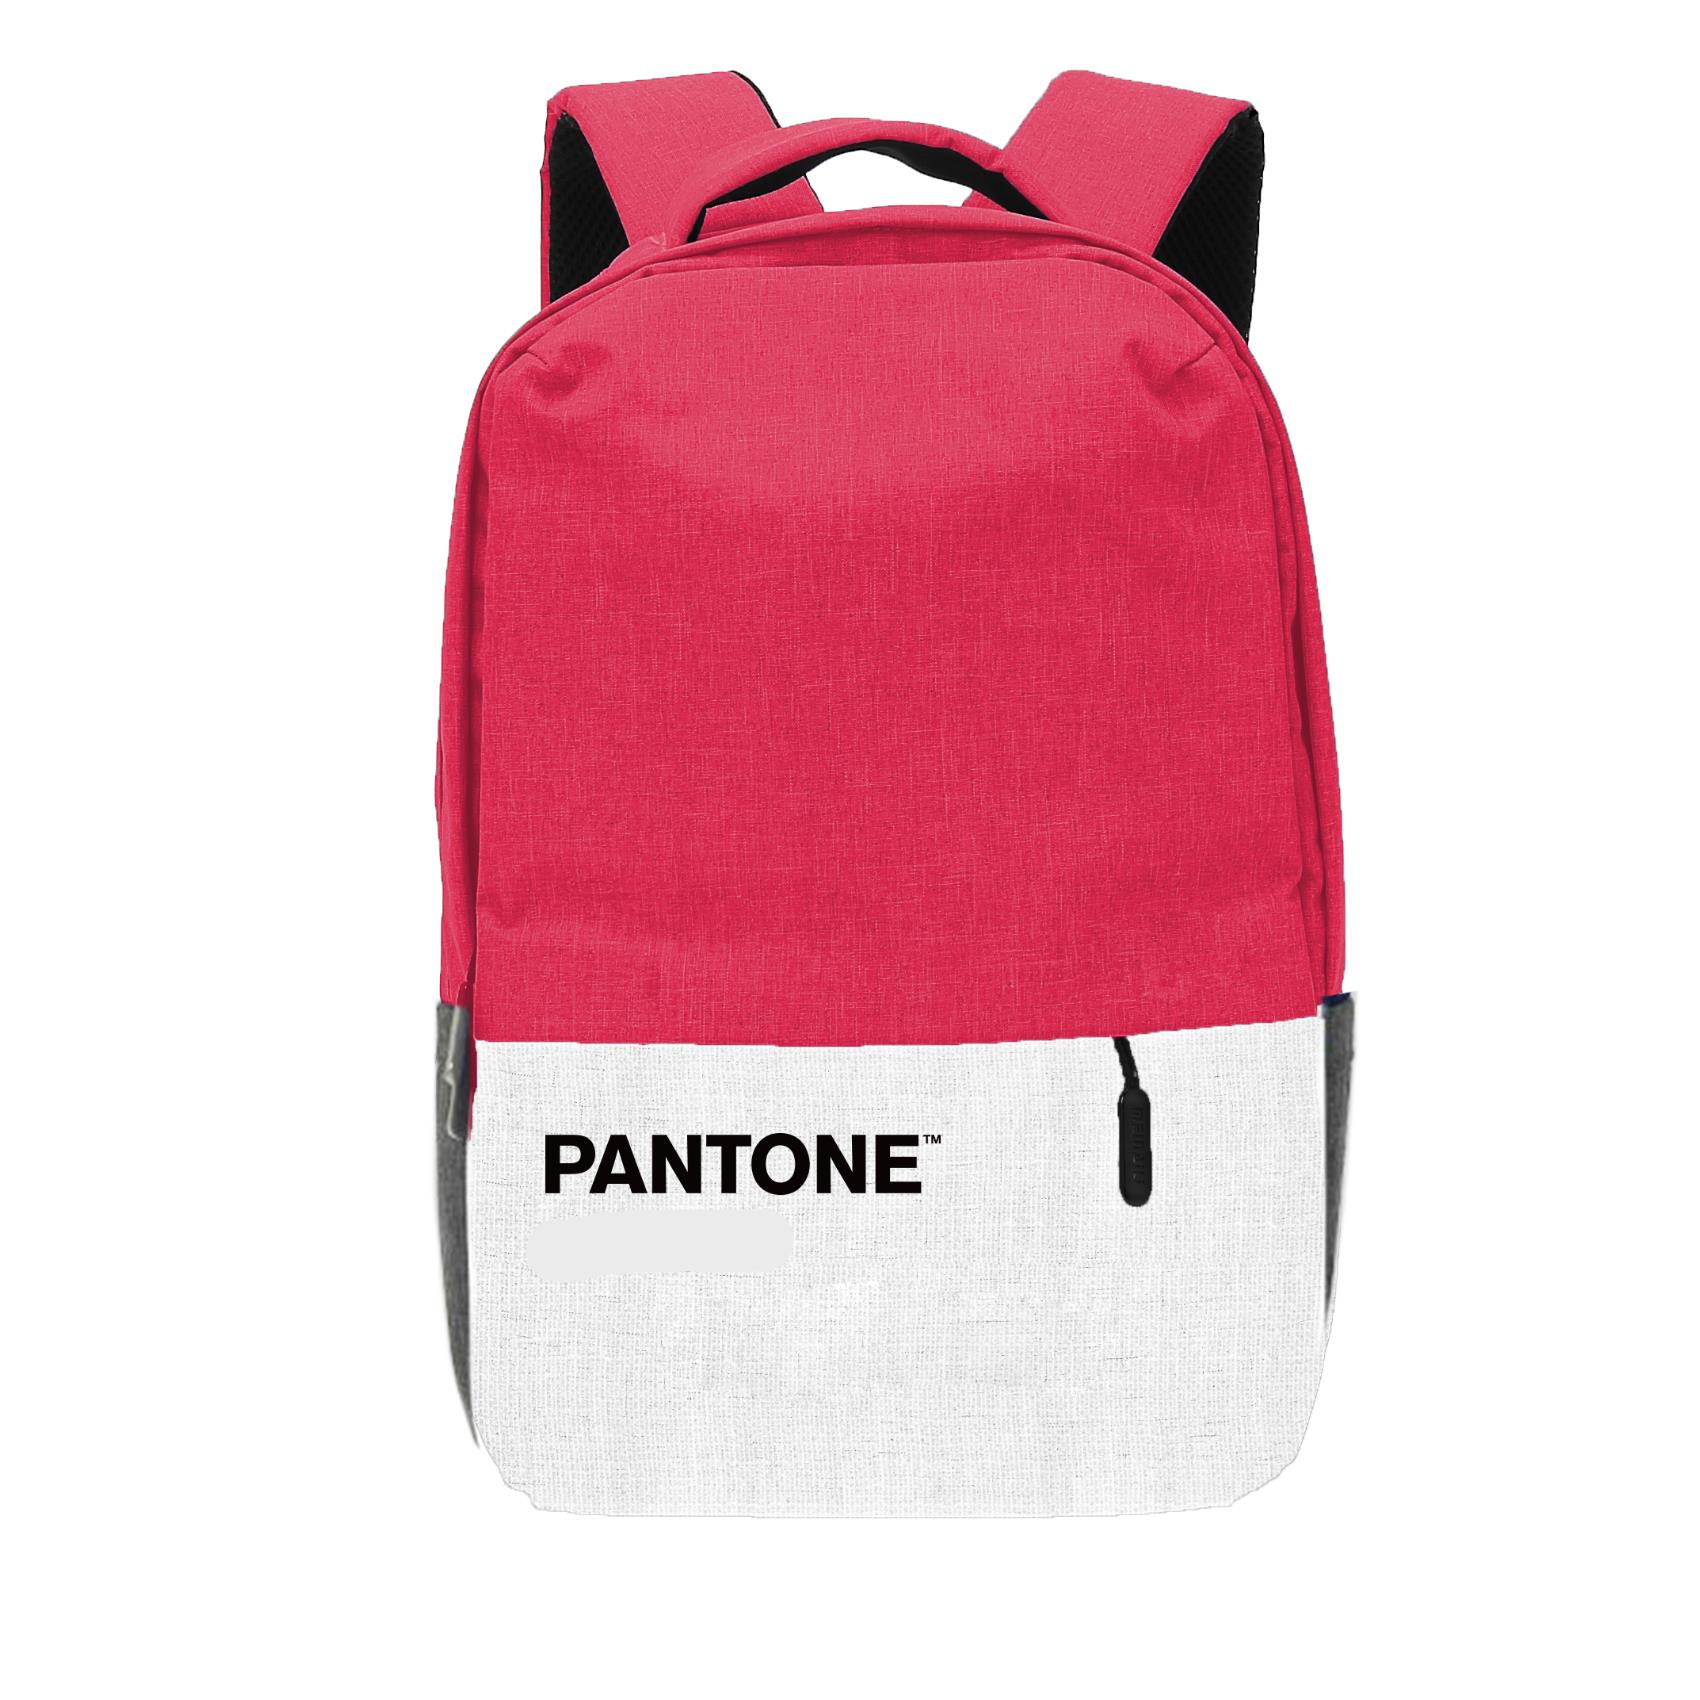 Pantone Backpack Pink 15 6 Pantone Pt Bk198p 4713213362051